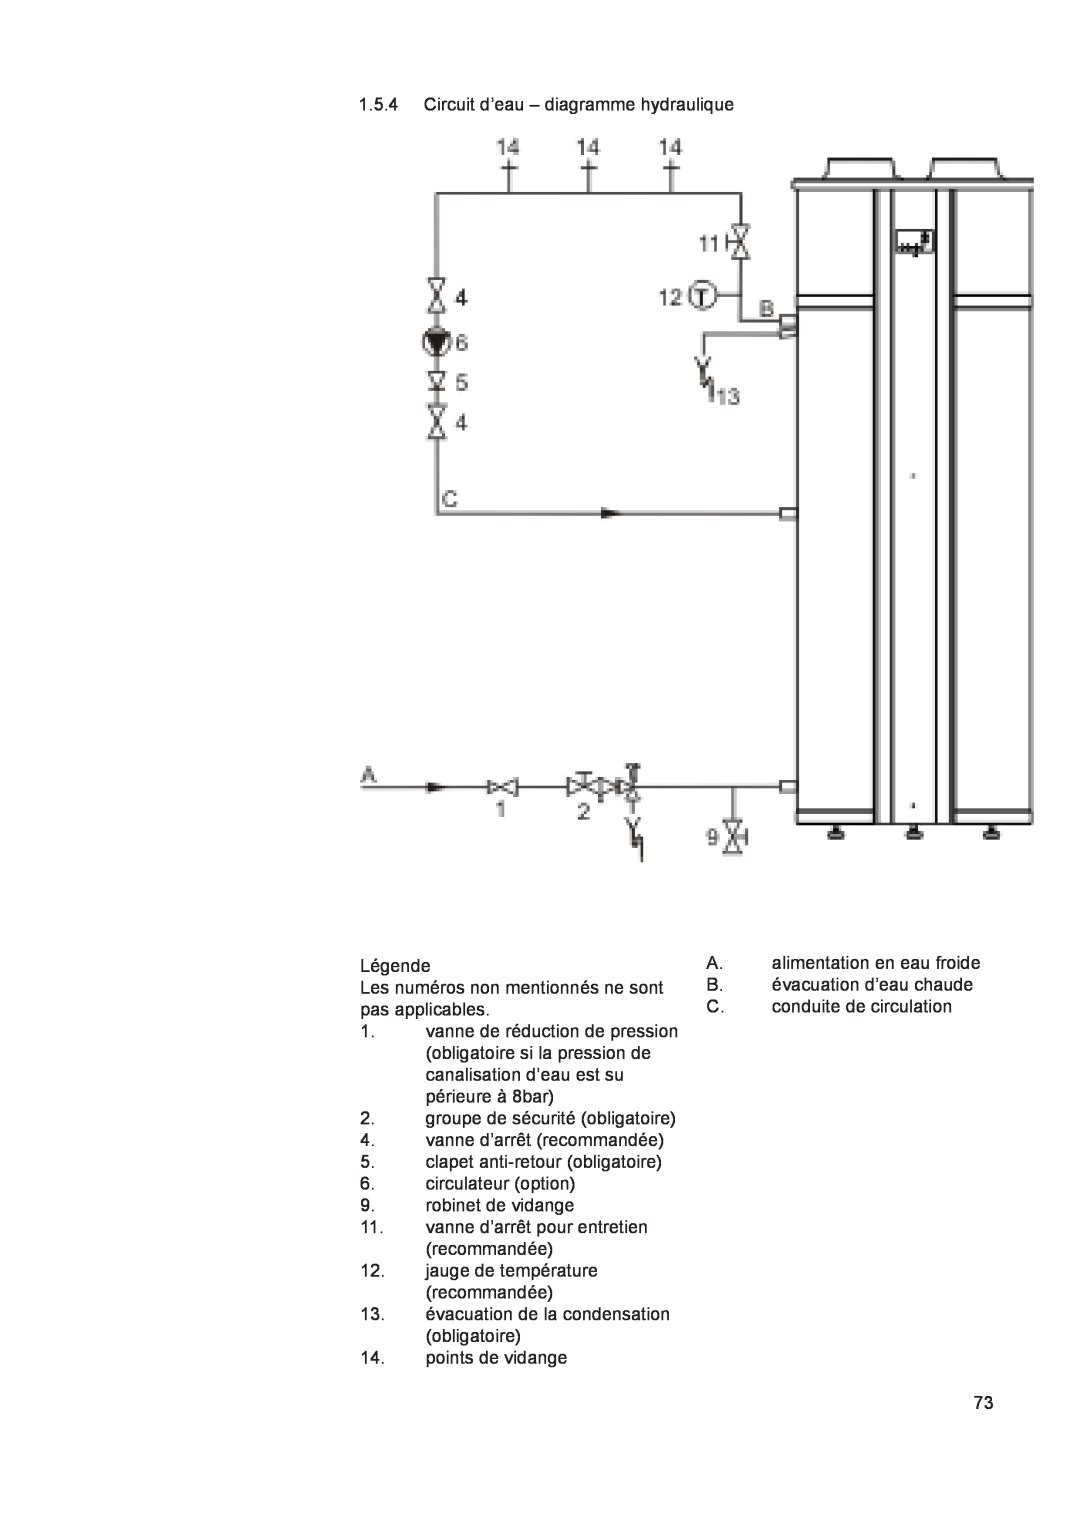 A.O. Smith 290 1.5.4Circuit d’eau – diagramme hydraulique, Légende, groupe de sécurité obligatoire, points de vidange 